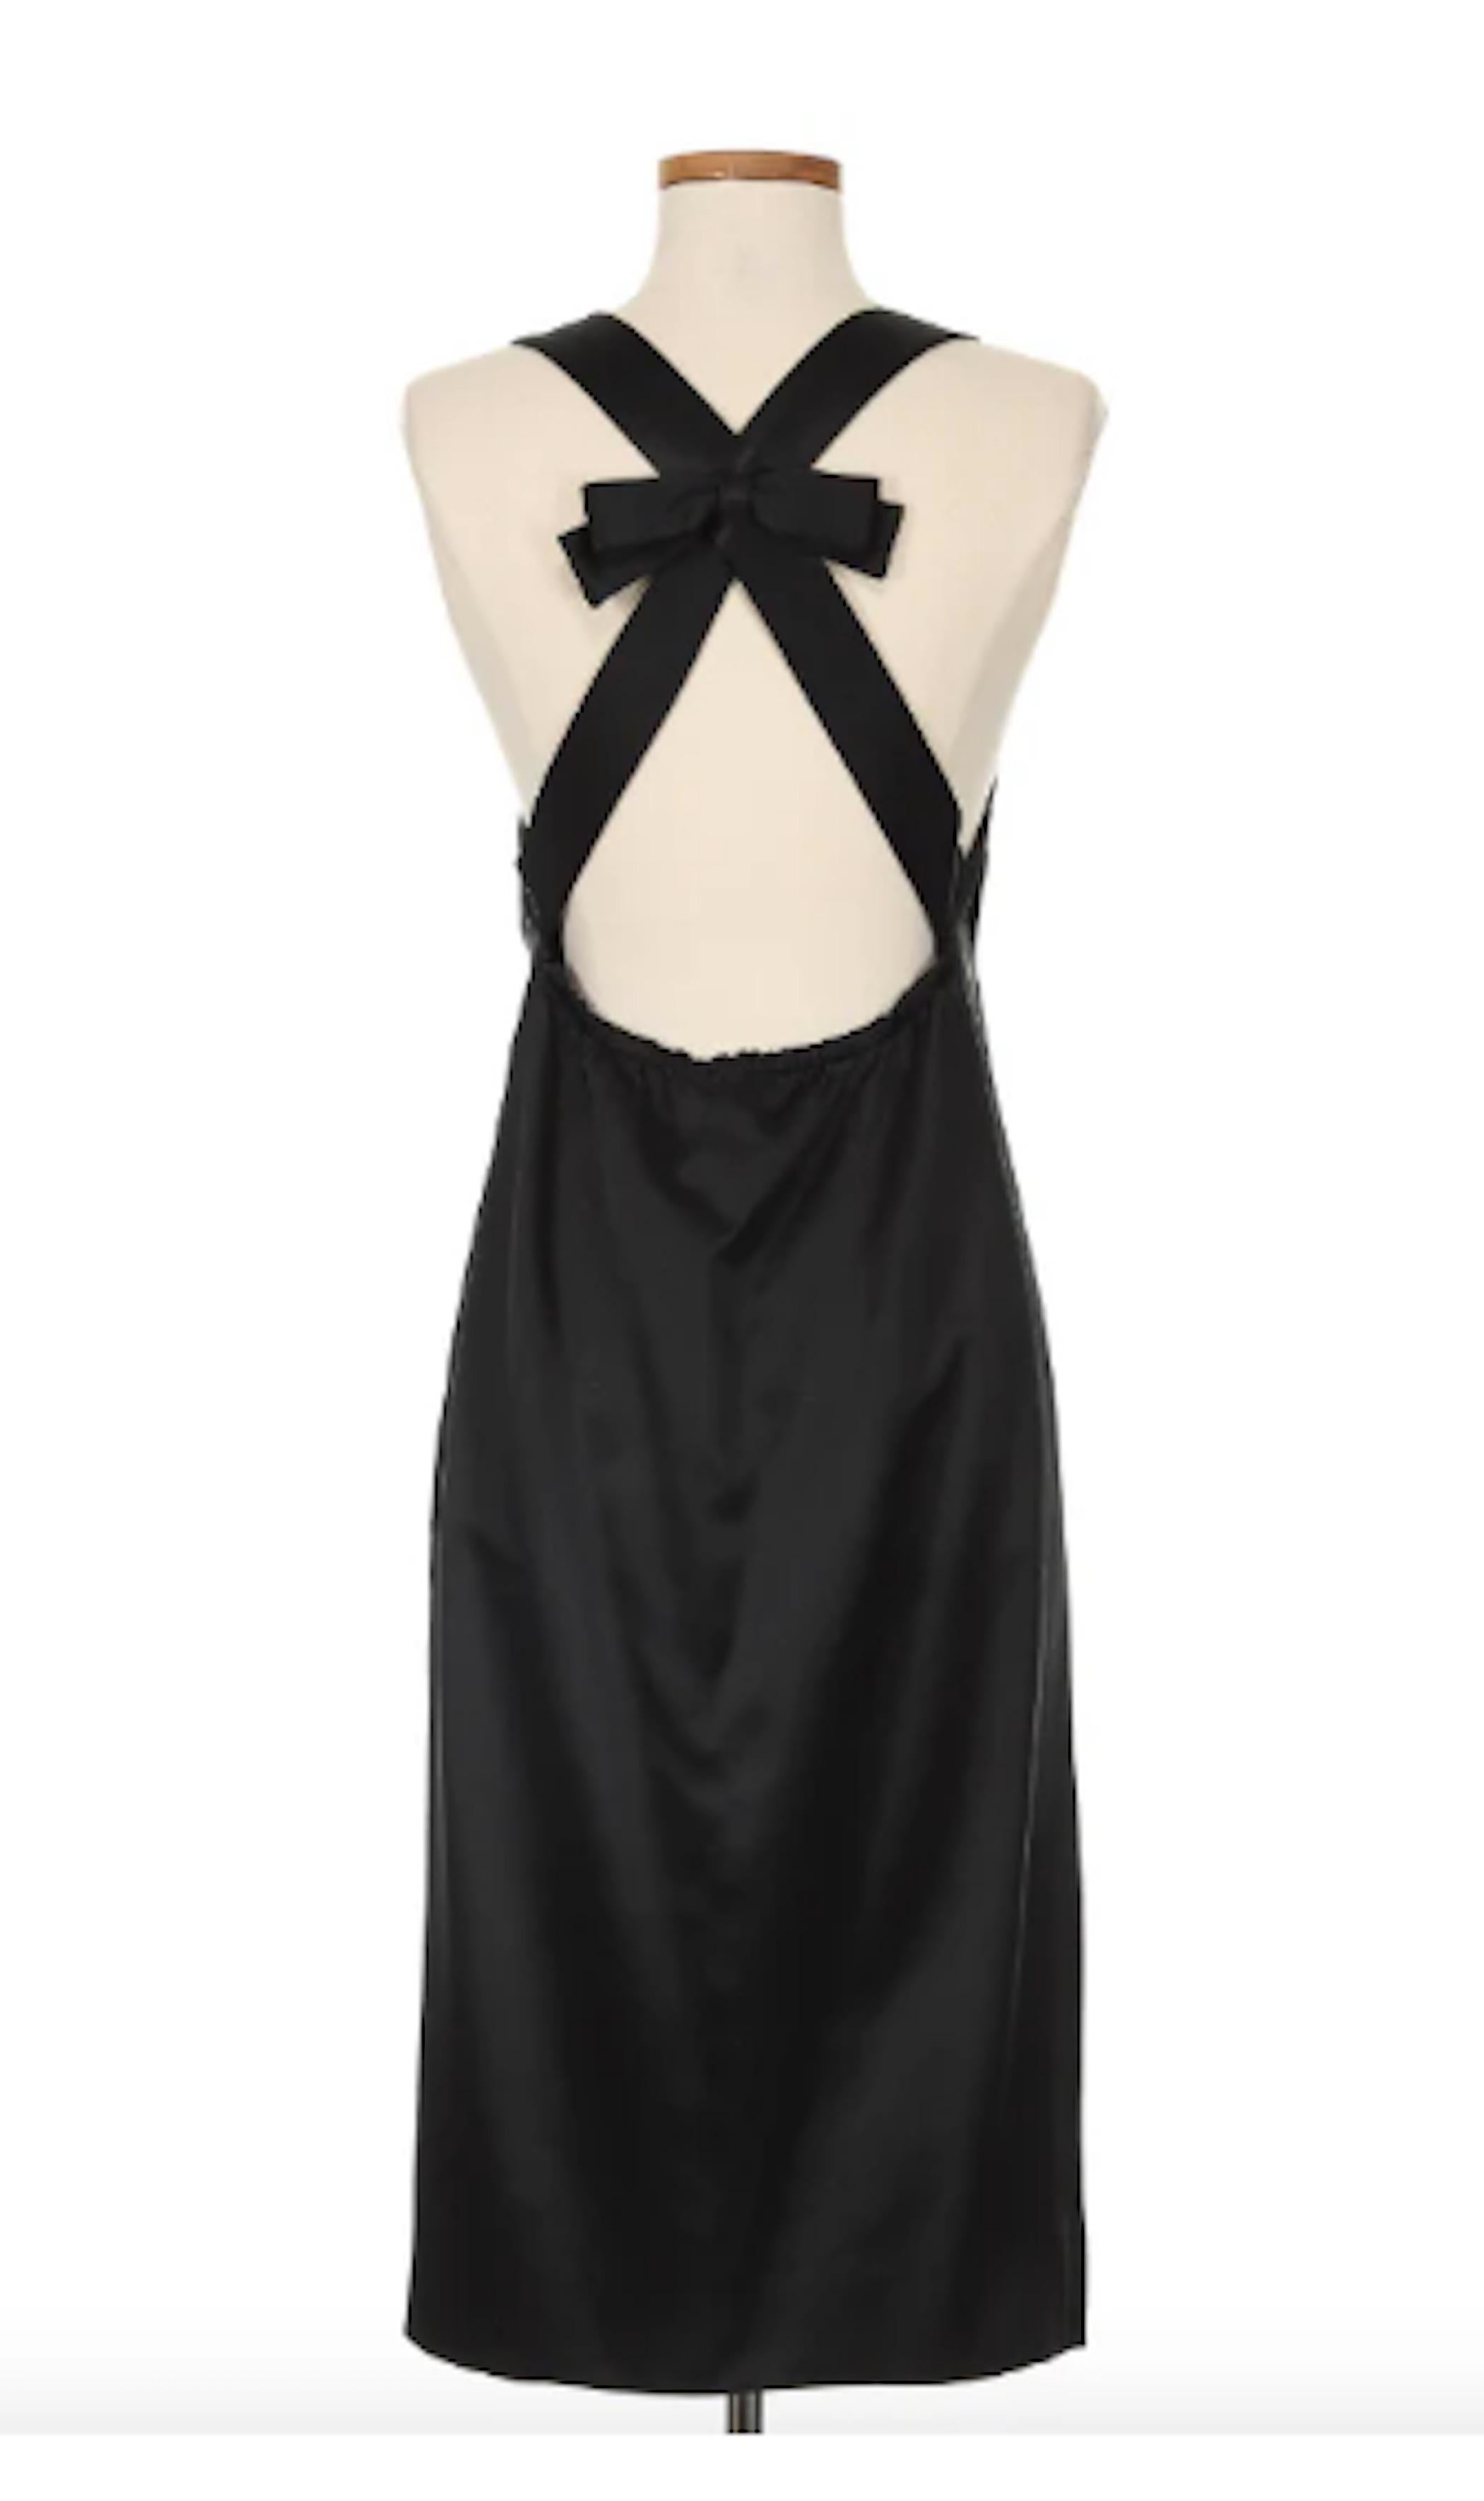 Karl Lagerfeld Schwarzes Cocktailkleid aus Seide. Dieses zeitlose und klassische Kleid in einer strukturierten Silhouette erhält seinen zusätzlichen Charme durch die Schleife am Rücken, die einen Hauch von Weiblichkeit verleiht. Perfekt für die